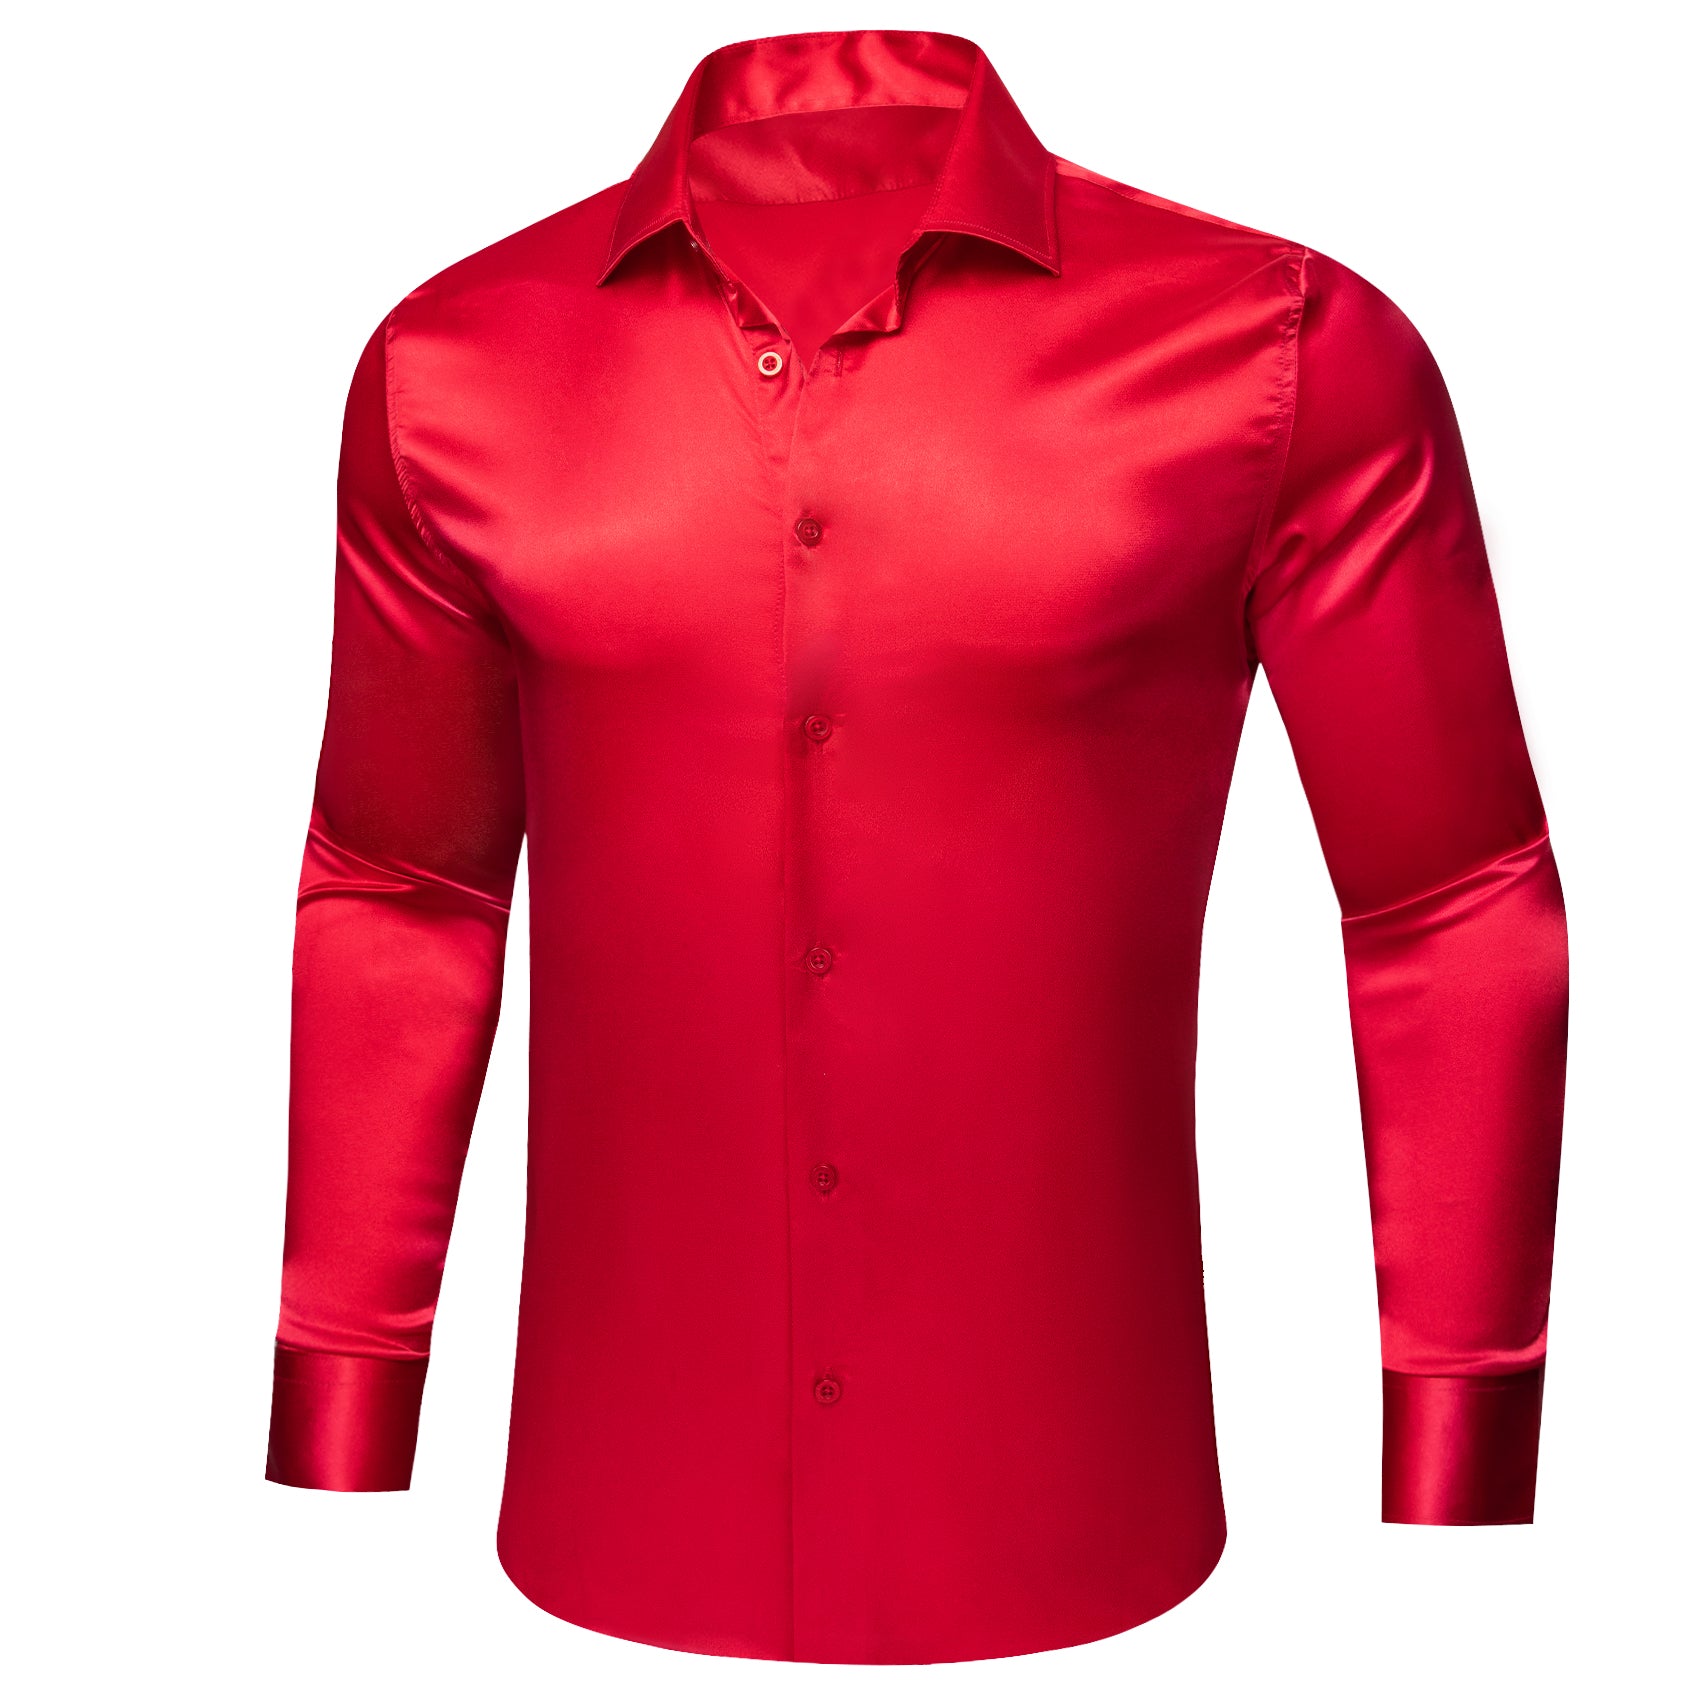 Barry.wang Crimson Solid Silk Men's Long Sleeve Shirt